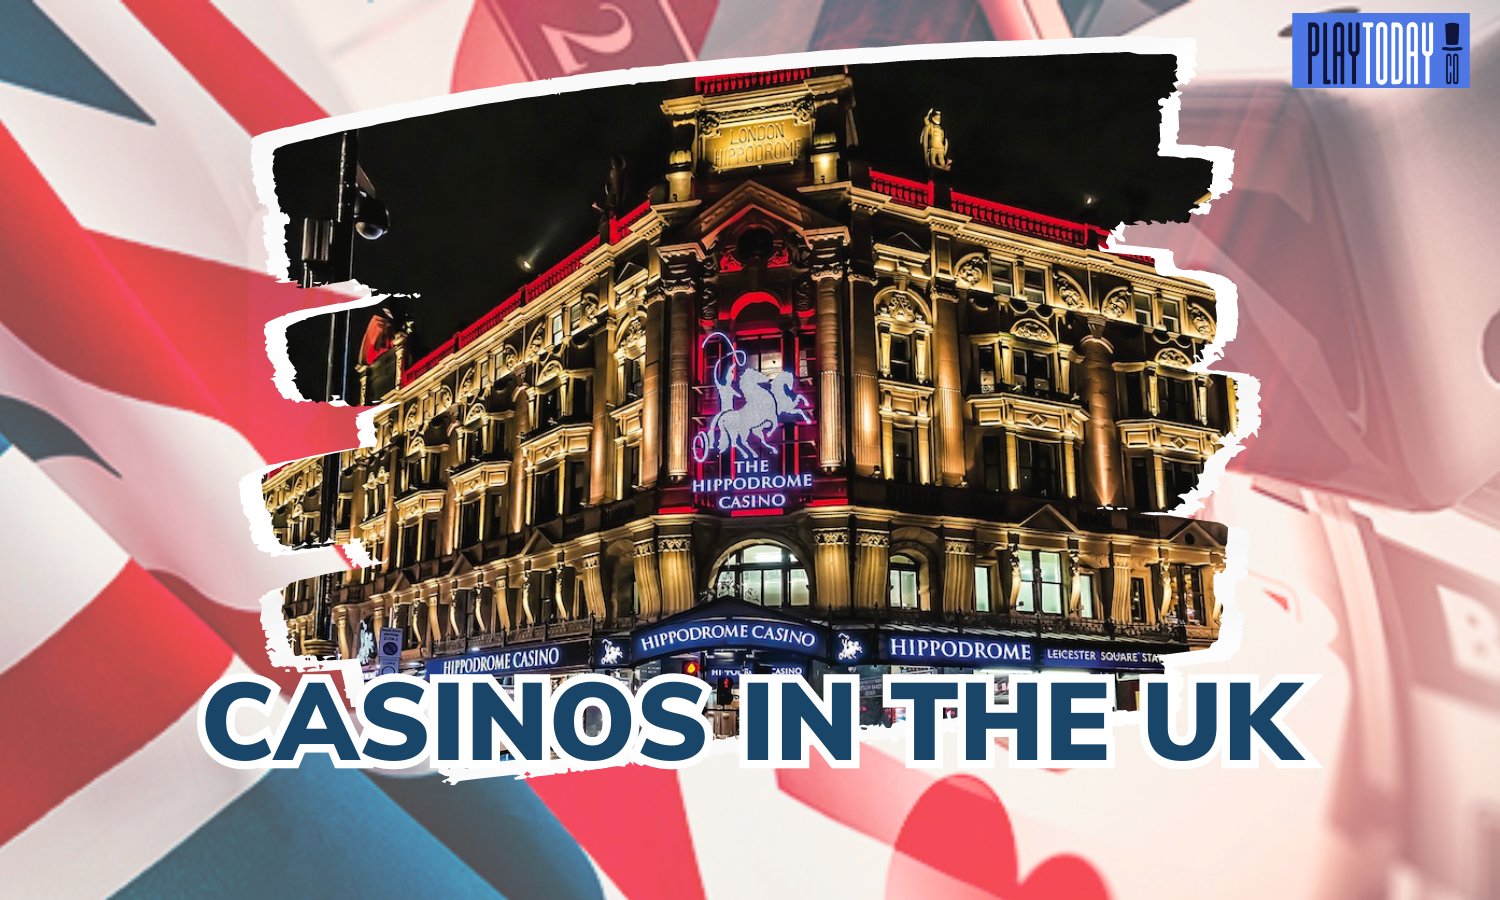 UK Casinos Visualizer